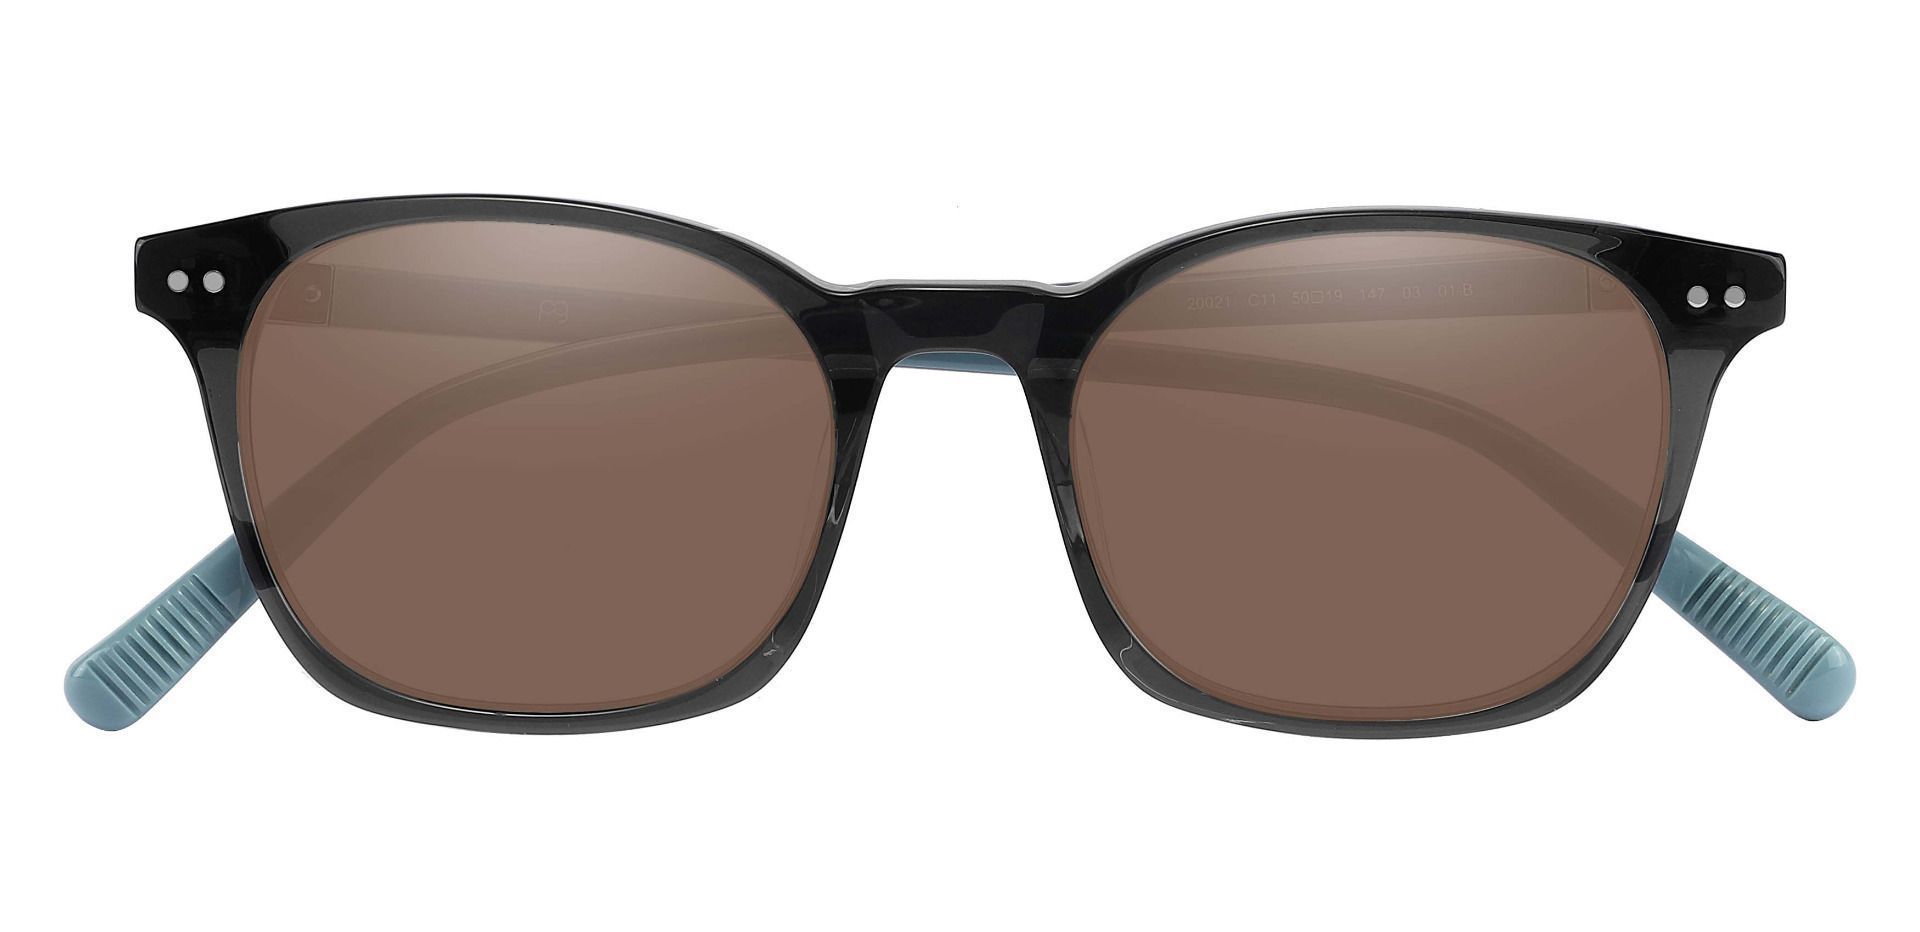 Alonzo Square Progressive Sunglasses - Gray Frame With Brown Lenses